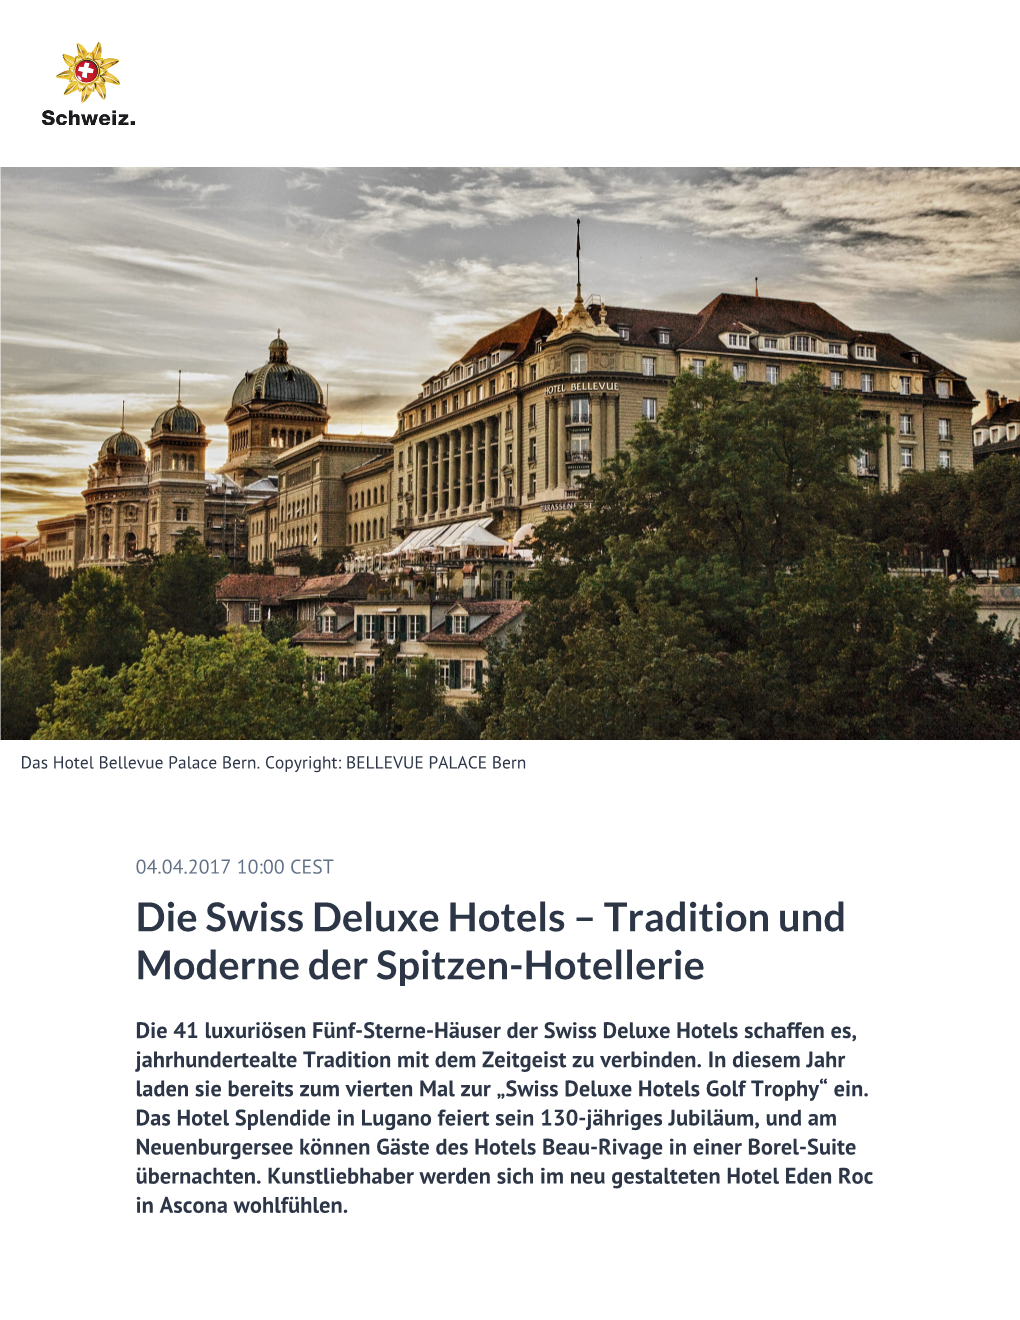 Die Swiss Deluxe Hotels – Tradition Und Moderne Der Spitzen-Hotellerie